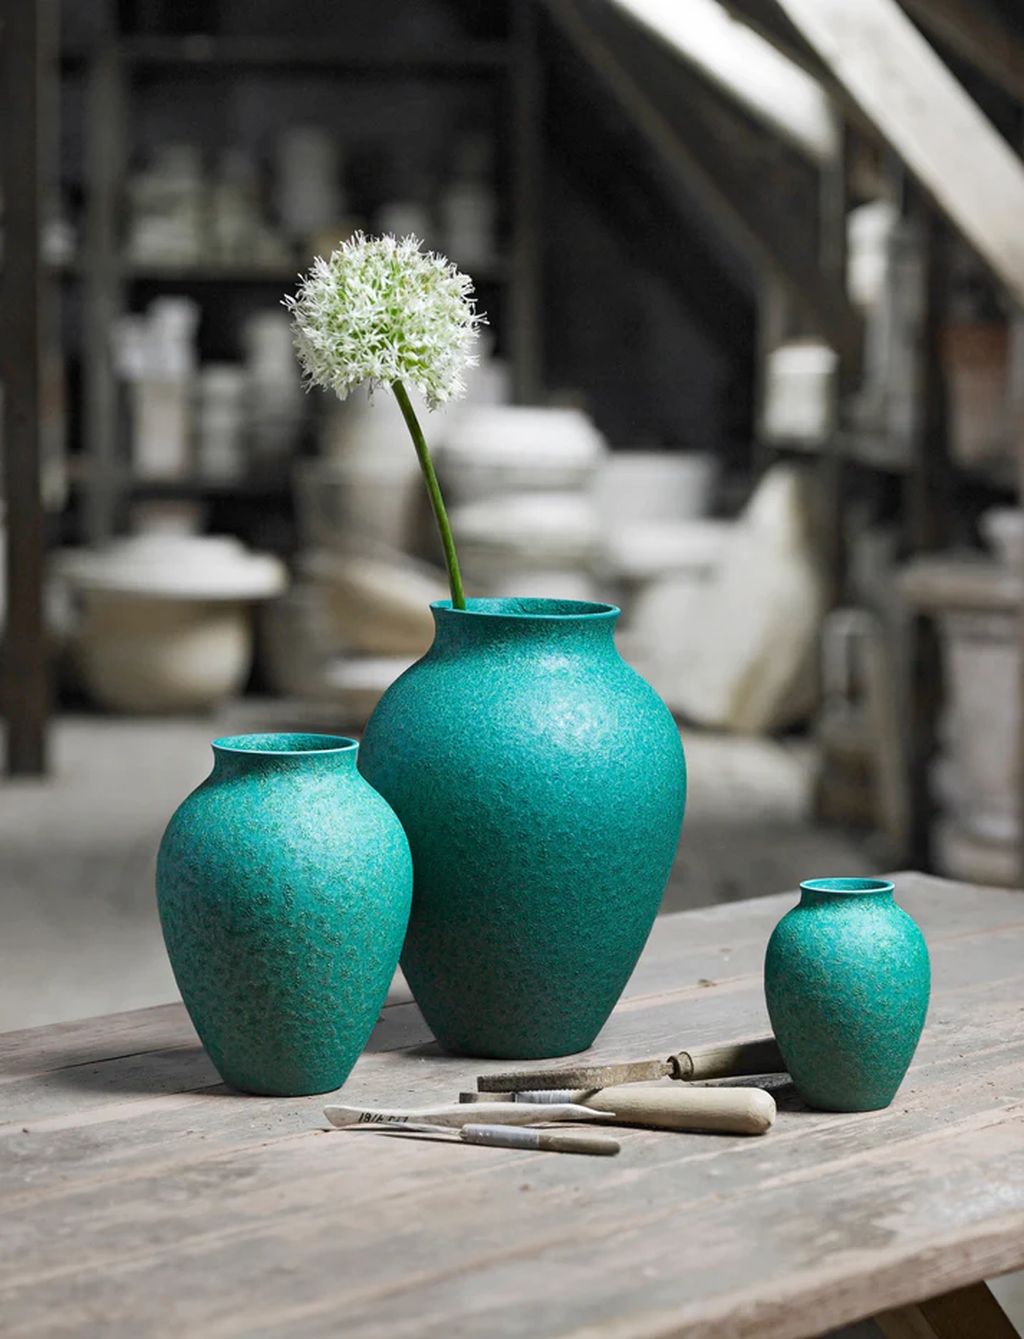 Knabstrup Keramik Vase H 12,5 cm, irgrøn